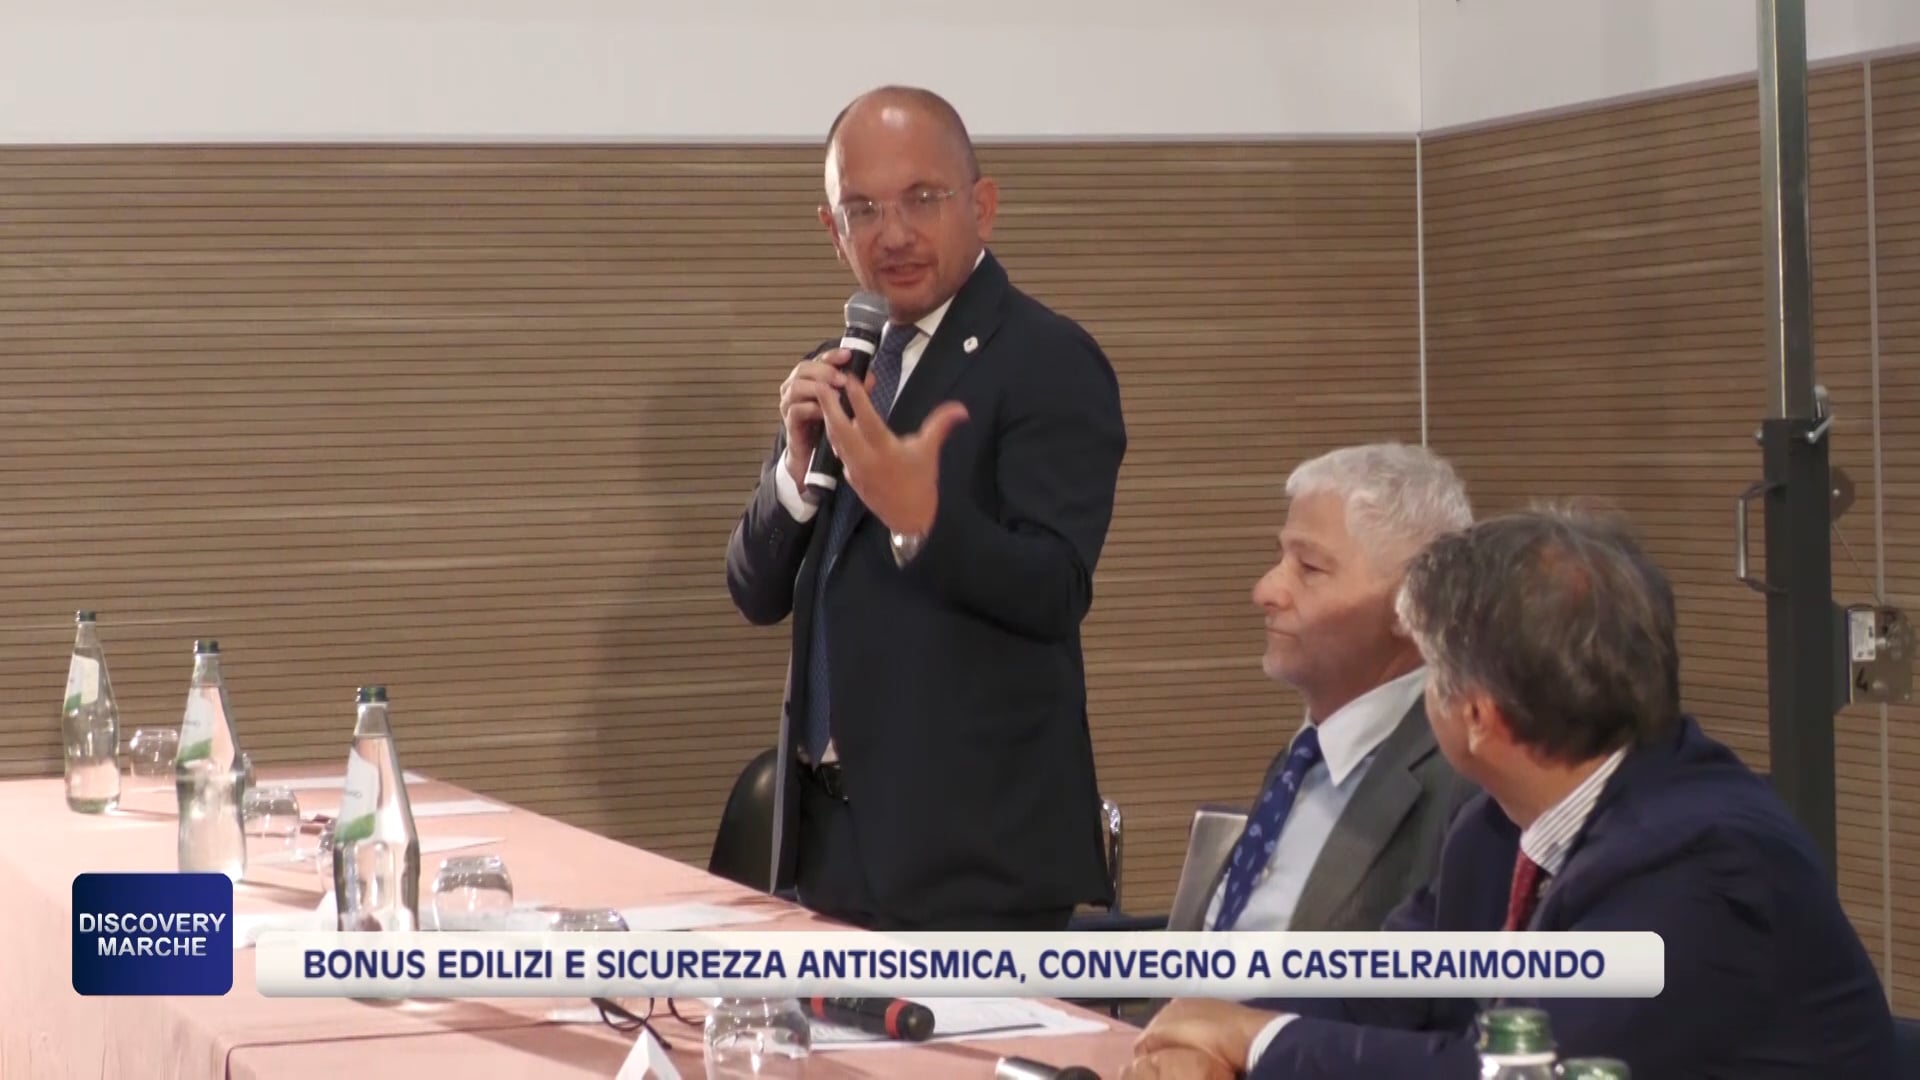 Bonus edilizi e sicurezza antisismica, convegno a Castelraimondo - VIDEO